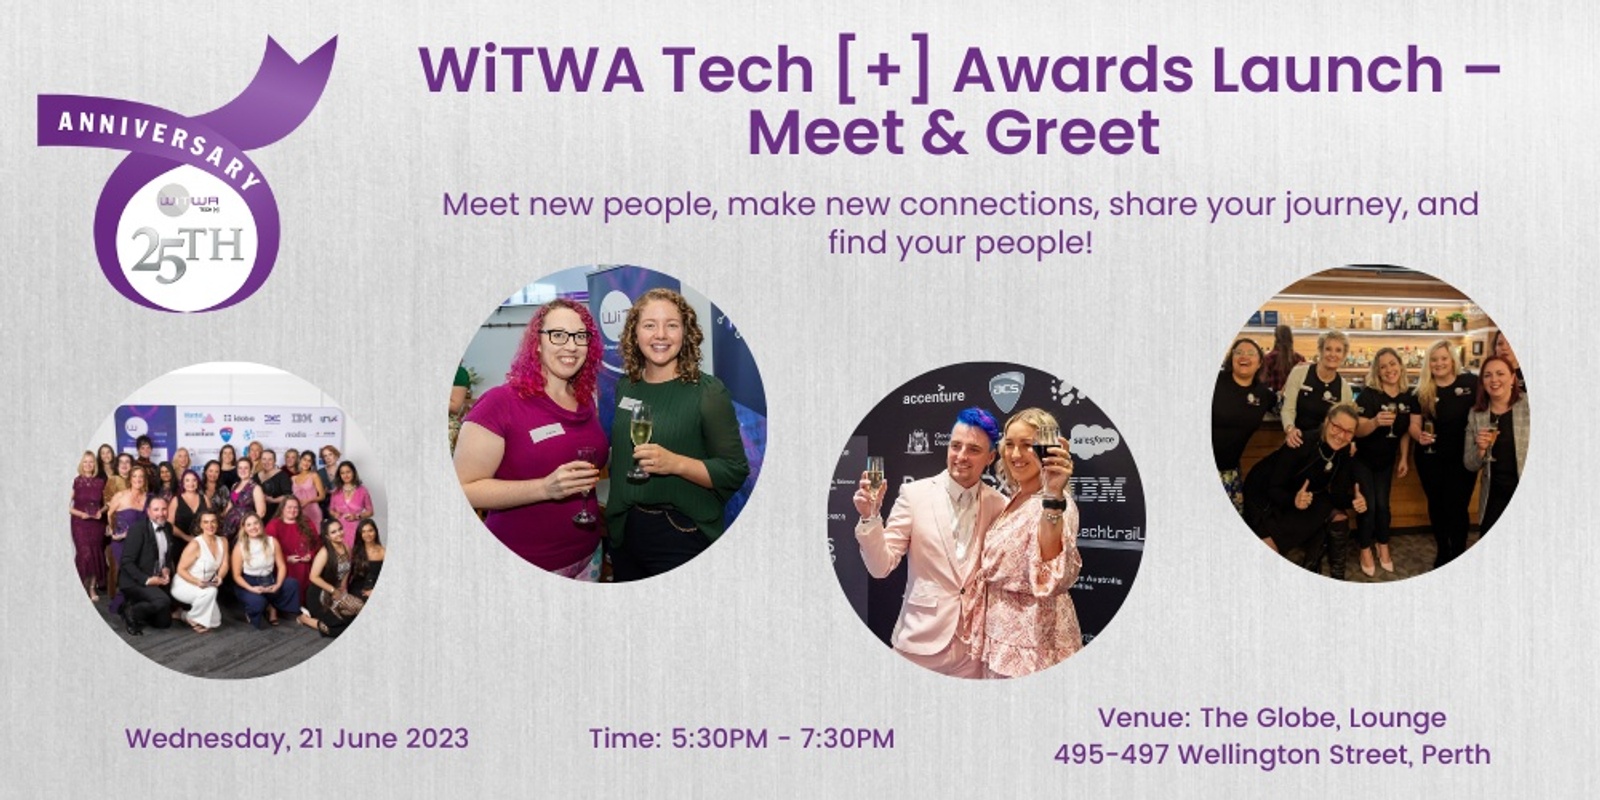 WiTWA Tech [+] Awards Launch – Meet & Greet